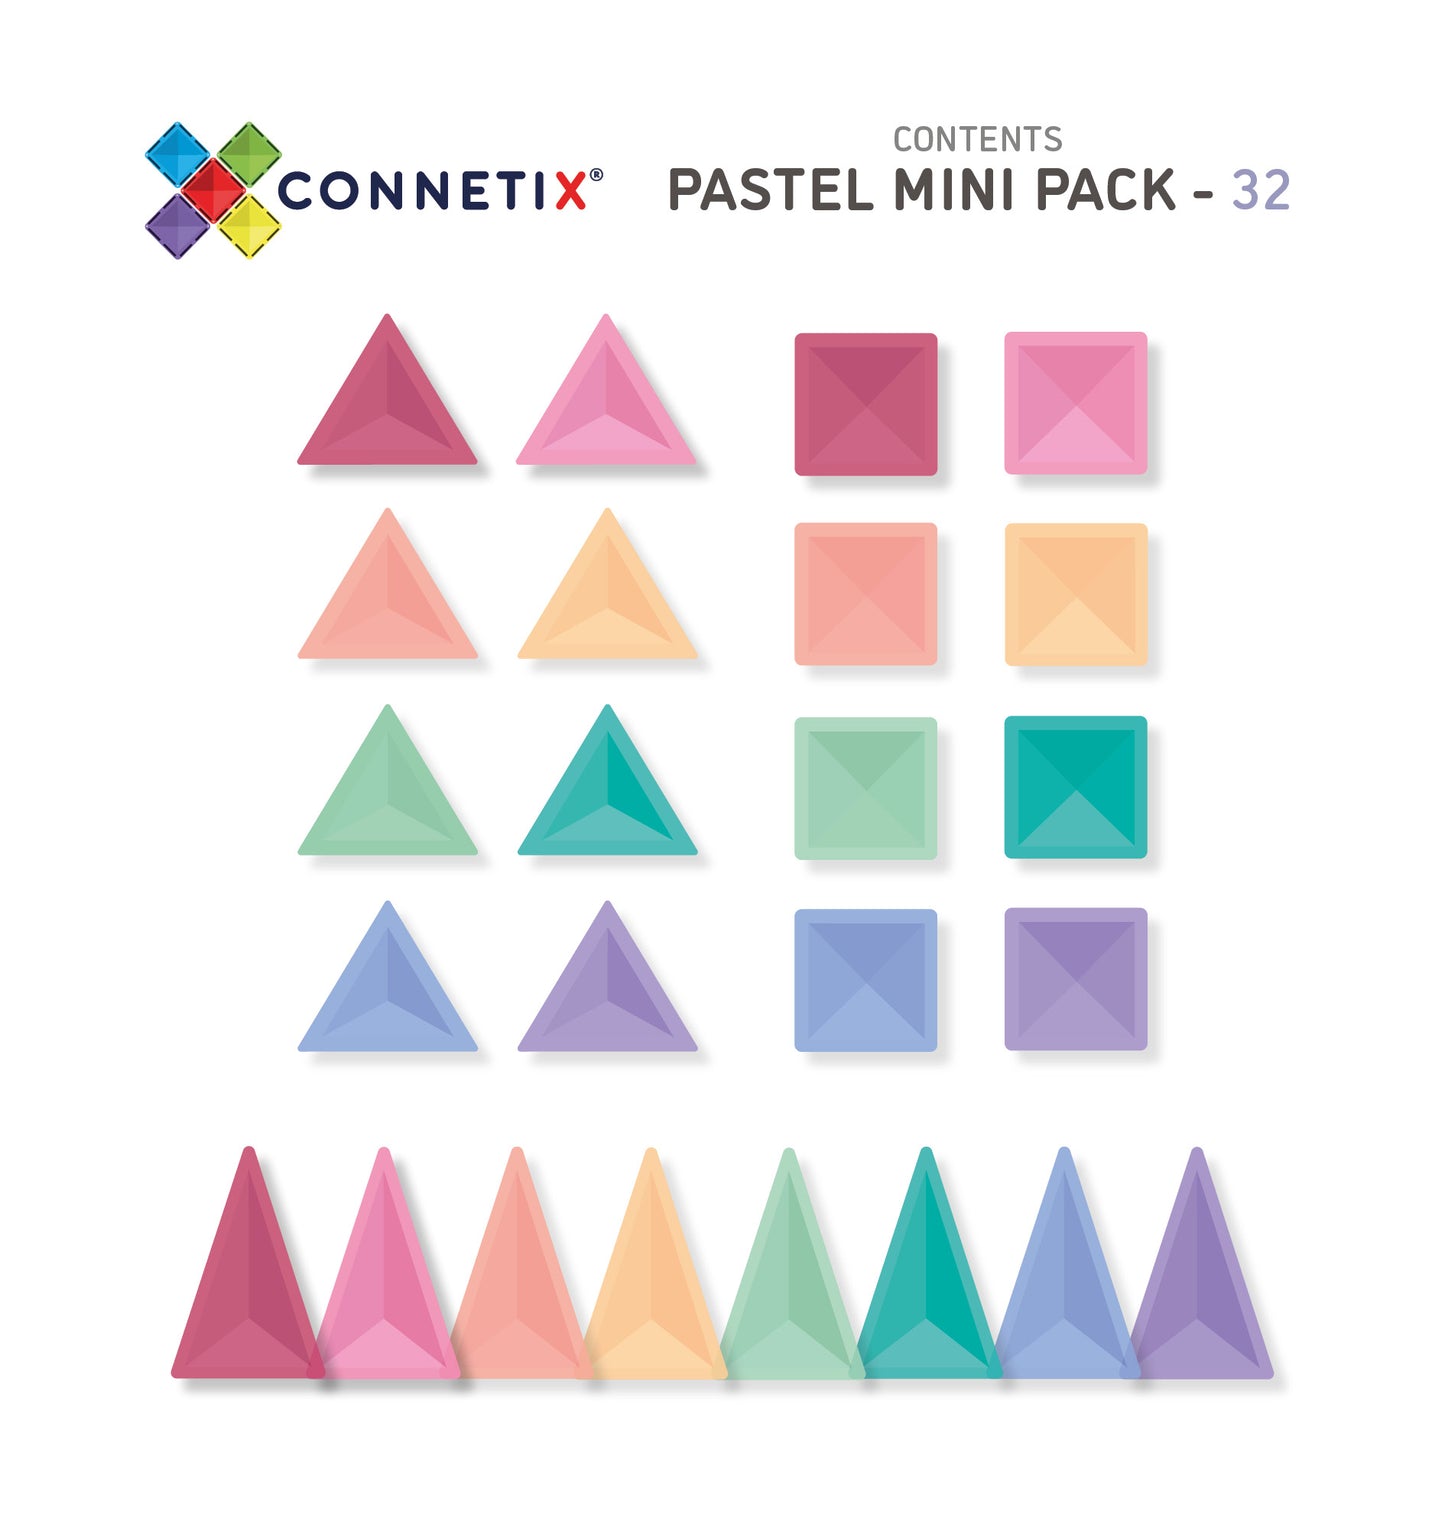 CONNETIX 32 PC PASTEL MINI PACK